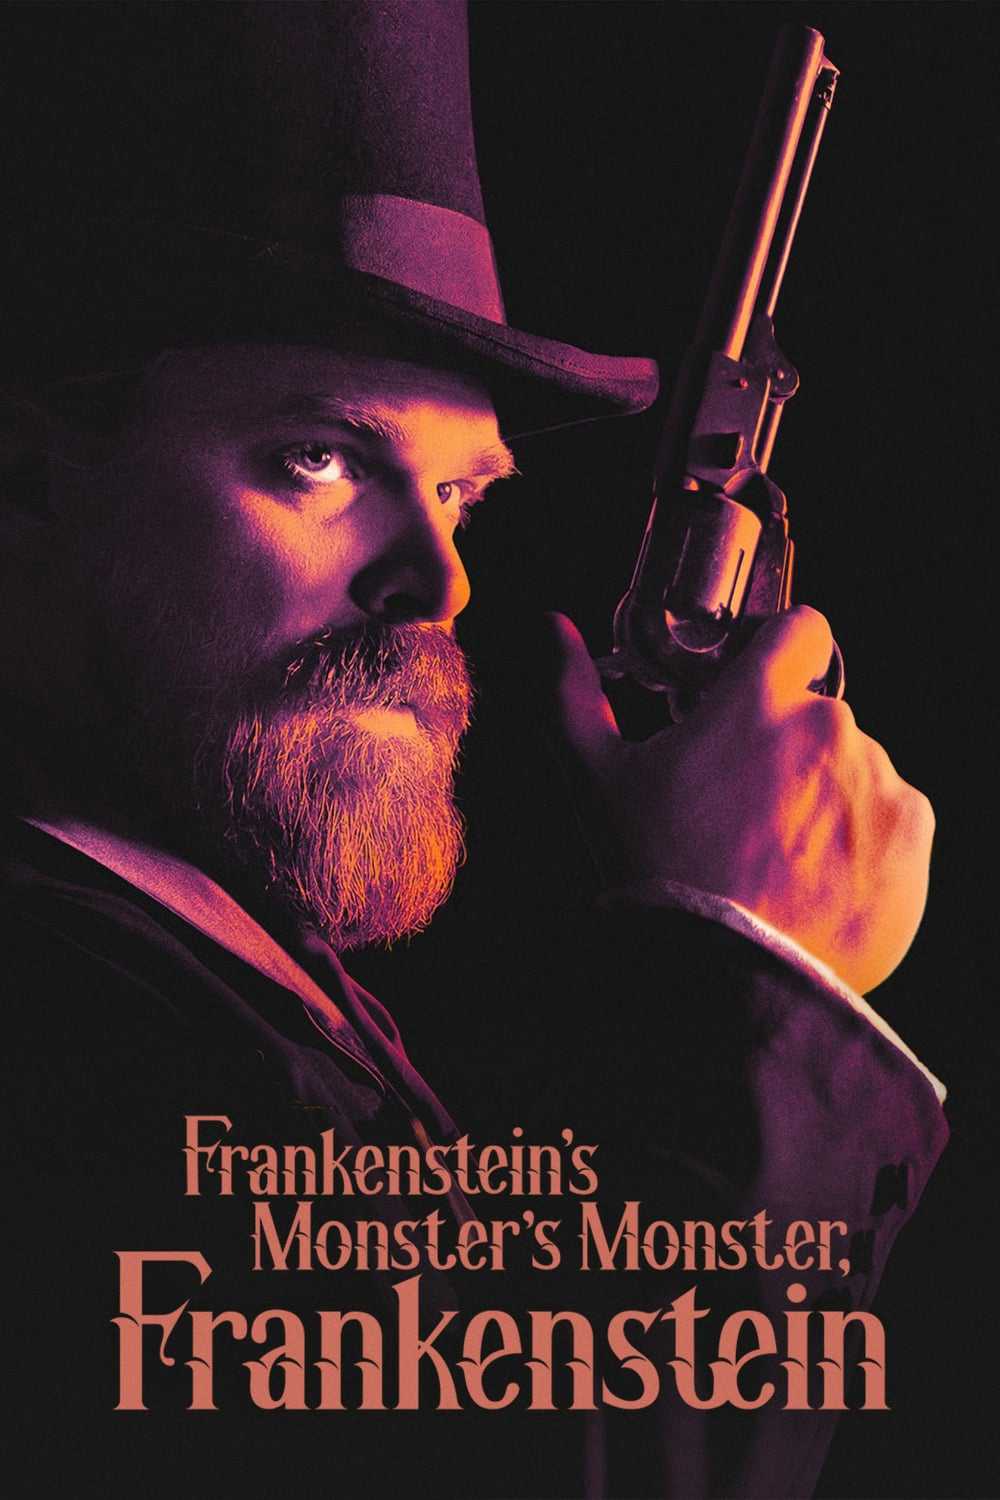 Frankenstein, quái vật của quái vật của frankenstein - Frankenstein's monster's monster